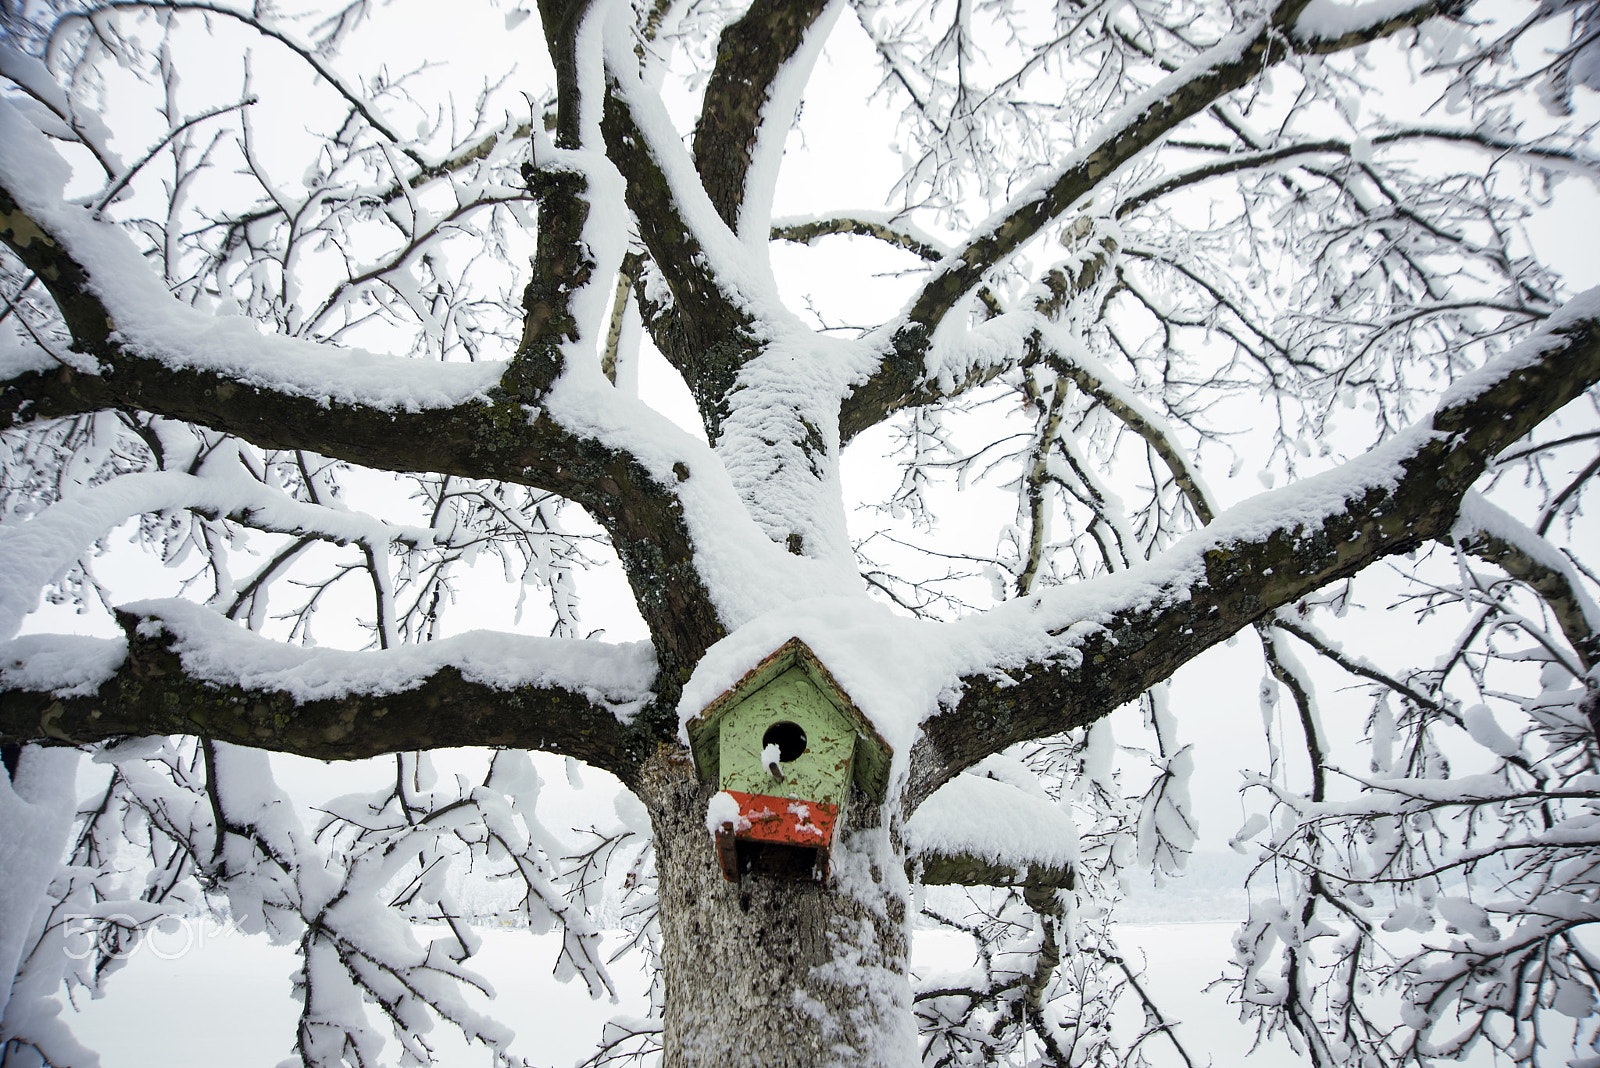 Nikon D610 sample photo. Bird house on a snowy tree photography